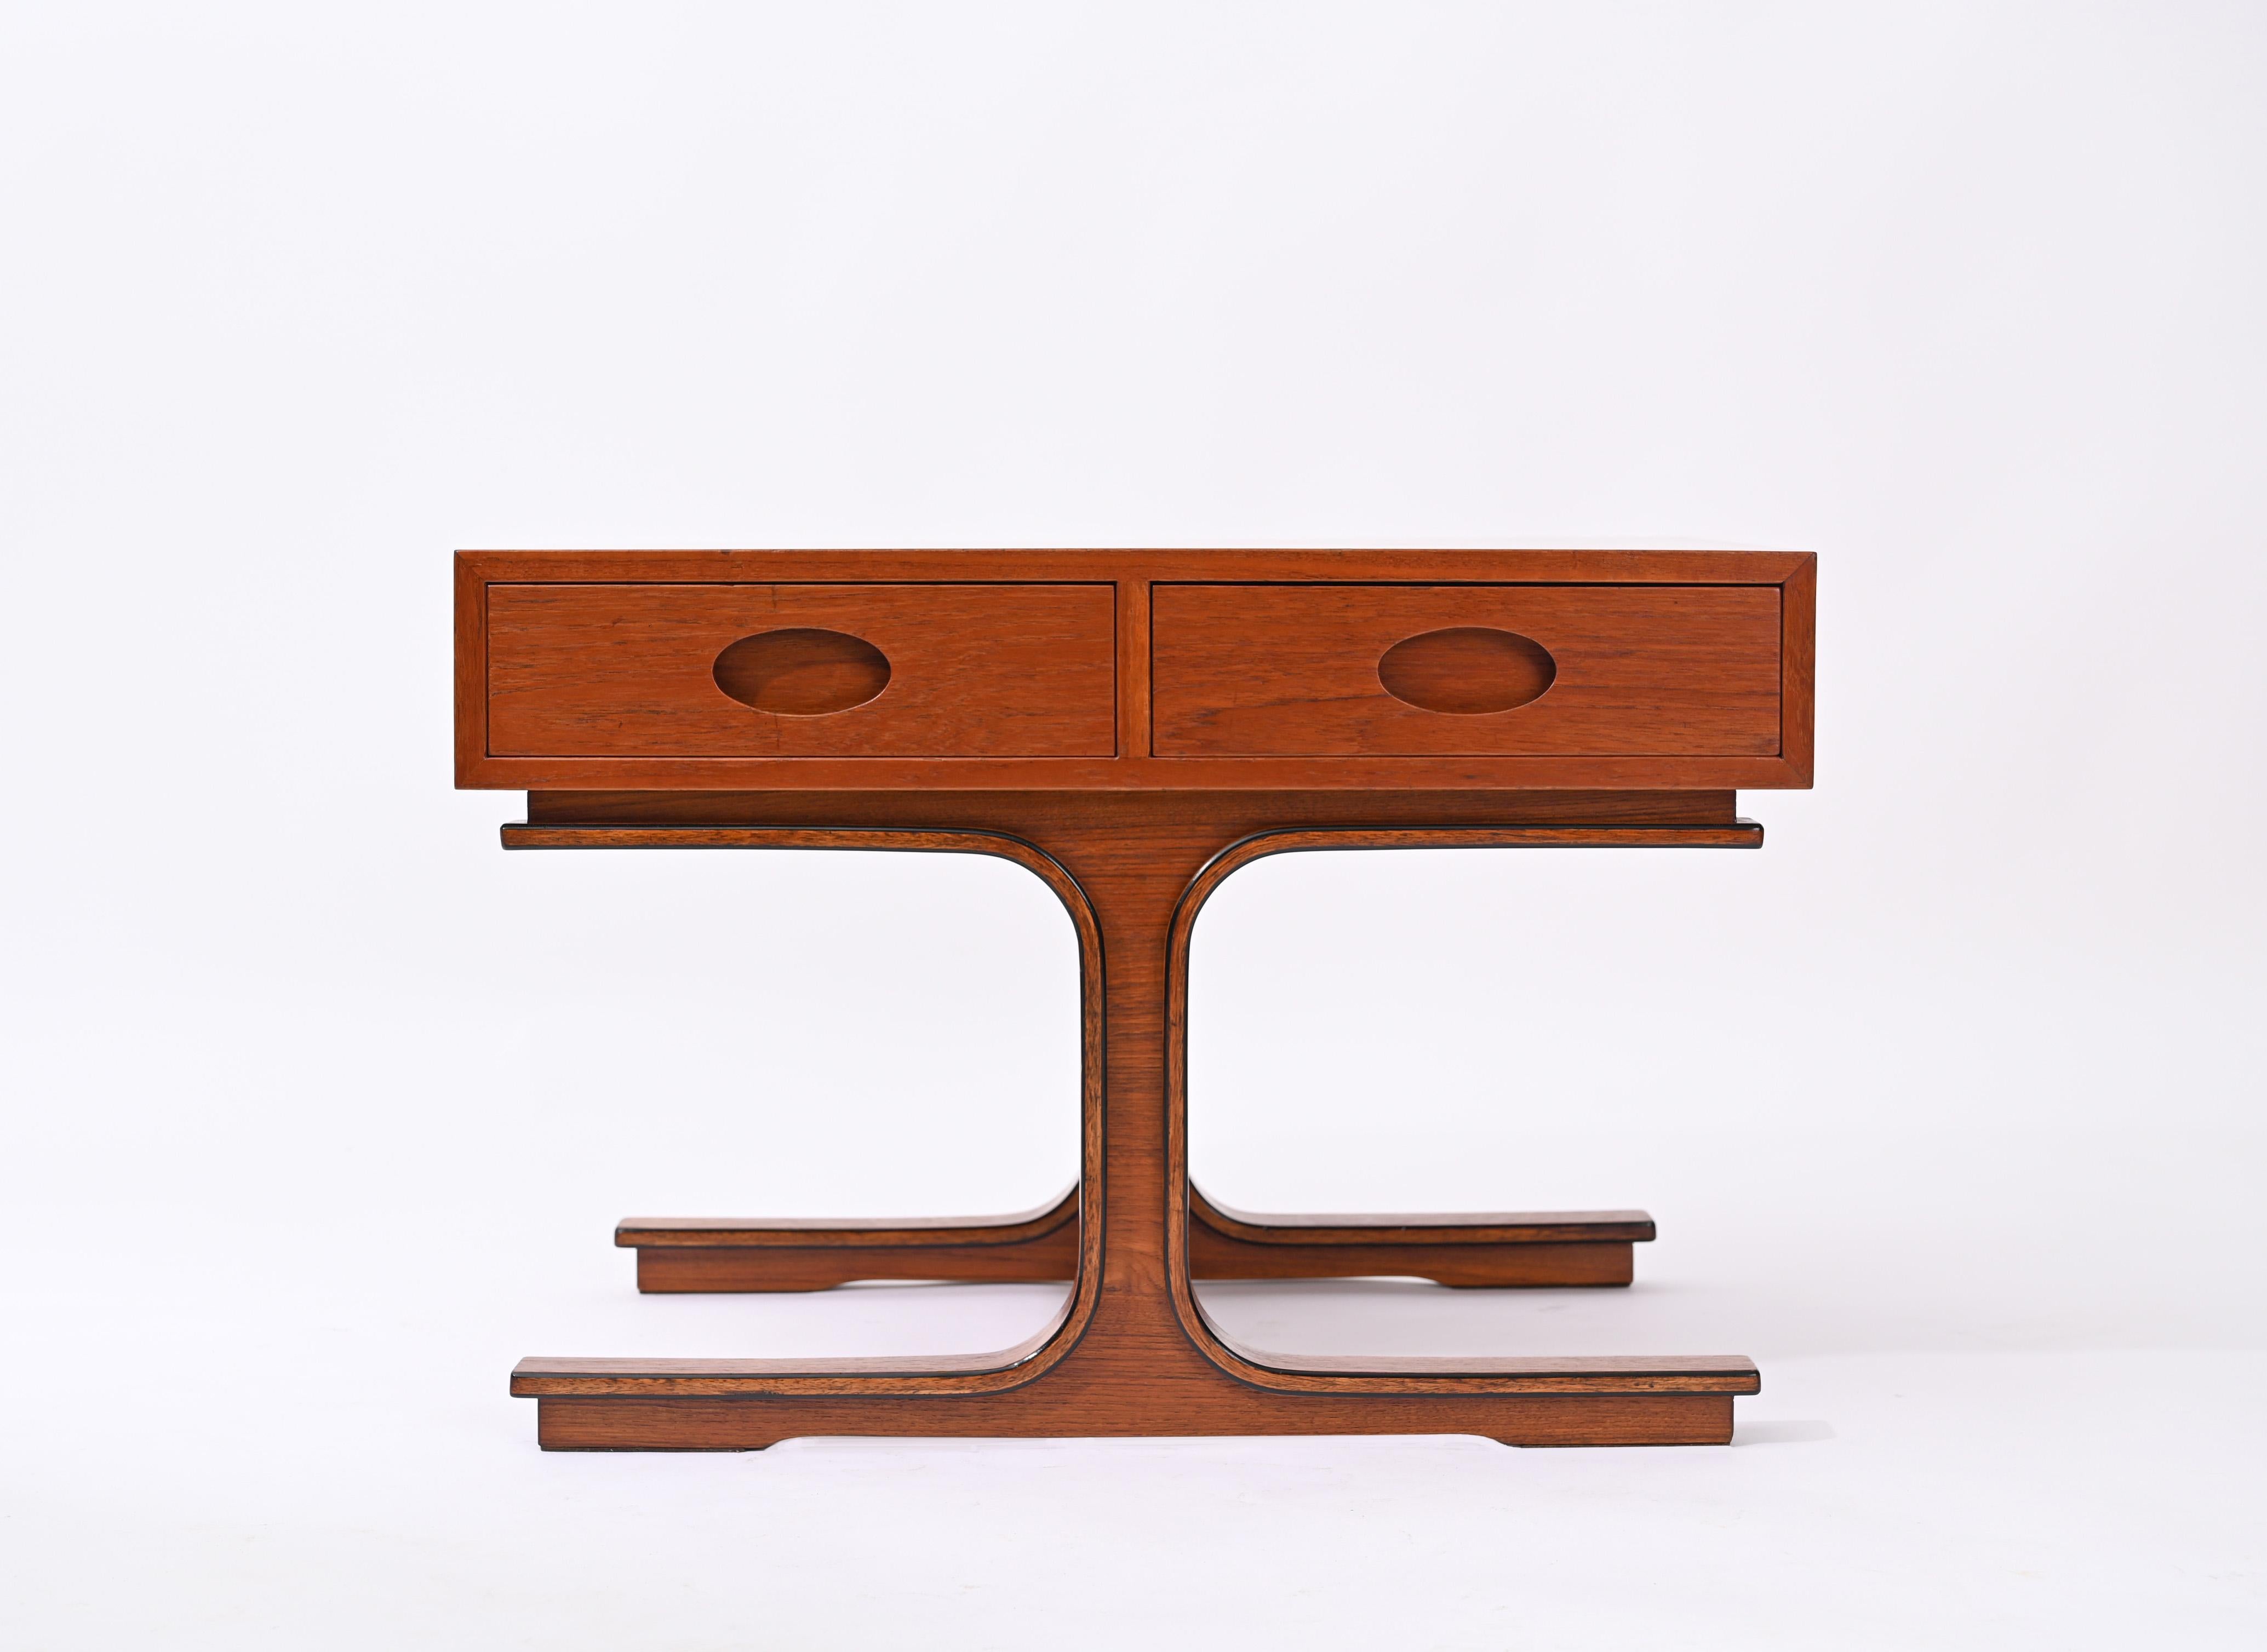 Étonnante table basse mod. 554 conçue par Gianfranco Frattini en 1957 pour Bernini. Polyvalent et élégant 

Cette table basse incroyablement élégante comporte deux tiroirs avec poignées sculptées et  les deux jambes courbes emblématiques sont